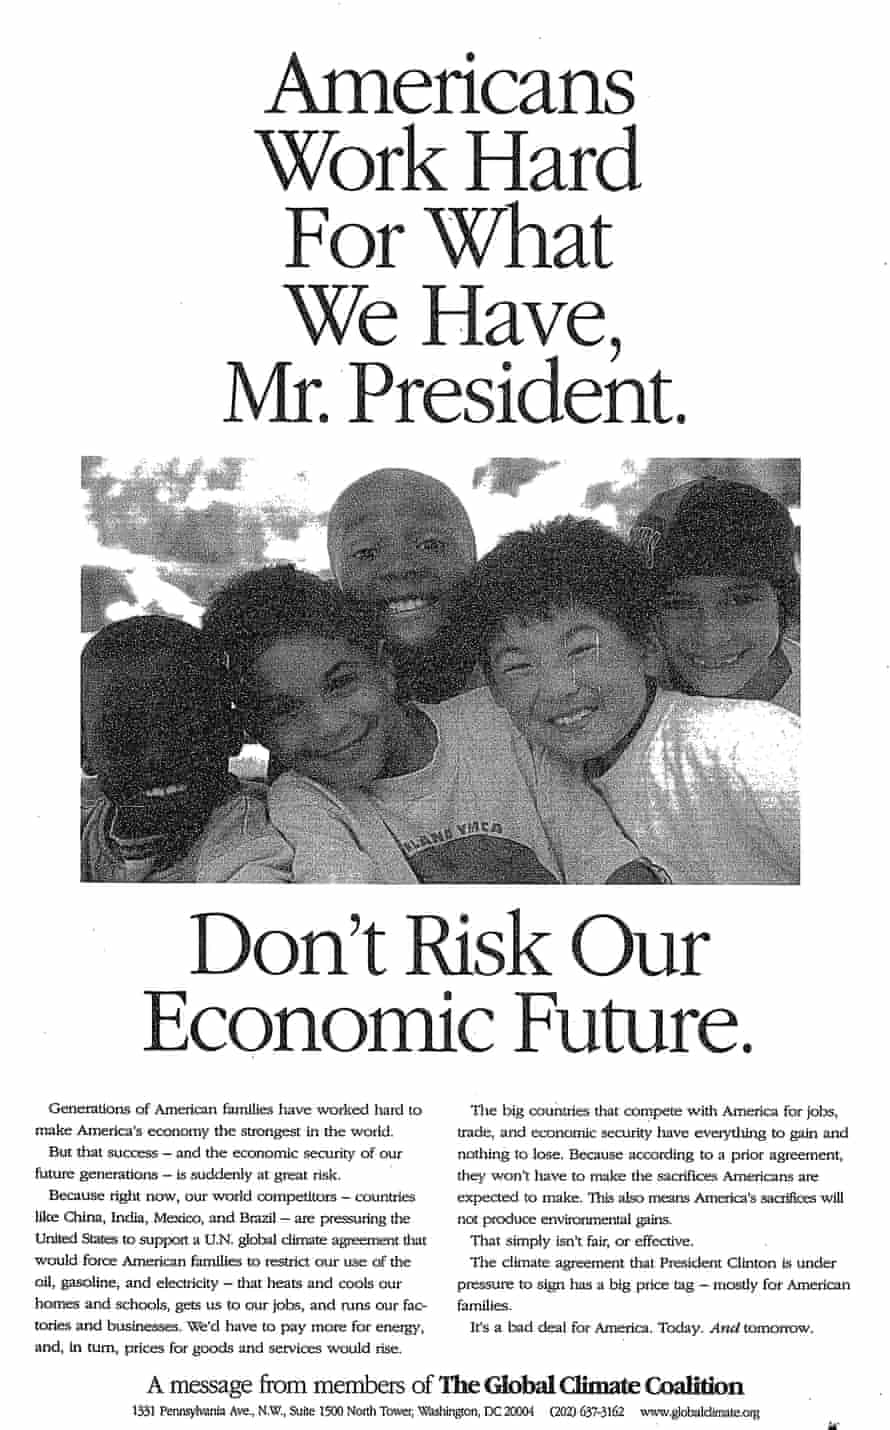 Alleanza globale per il clima, Dichiarazione del 1997: "Gli americani lavorano duramente per quello che abbiamo, signor presidente.  Non mettere a rischio il nostro futuro economico."